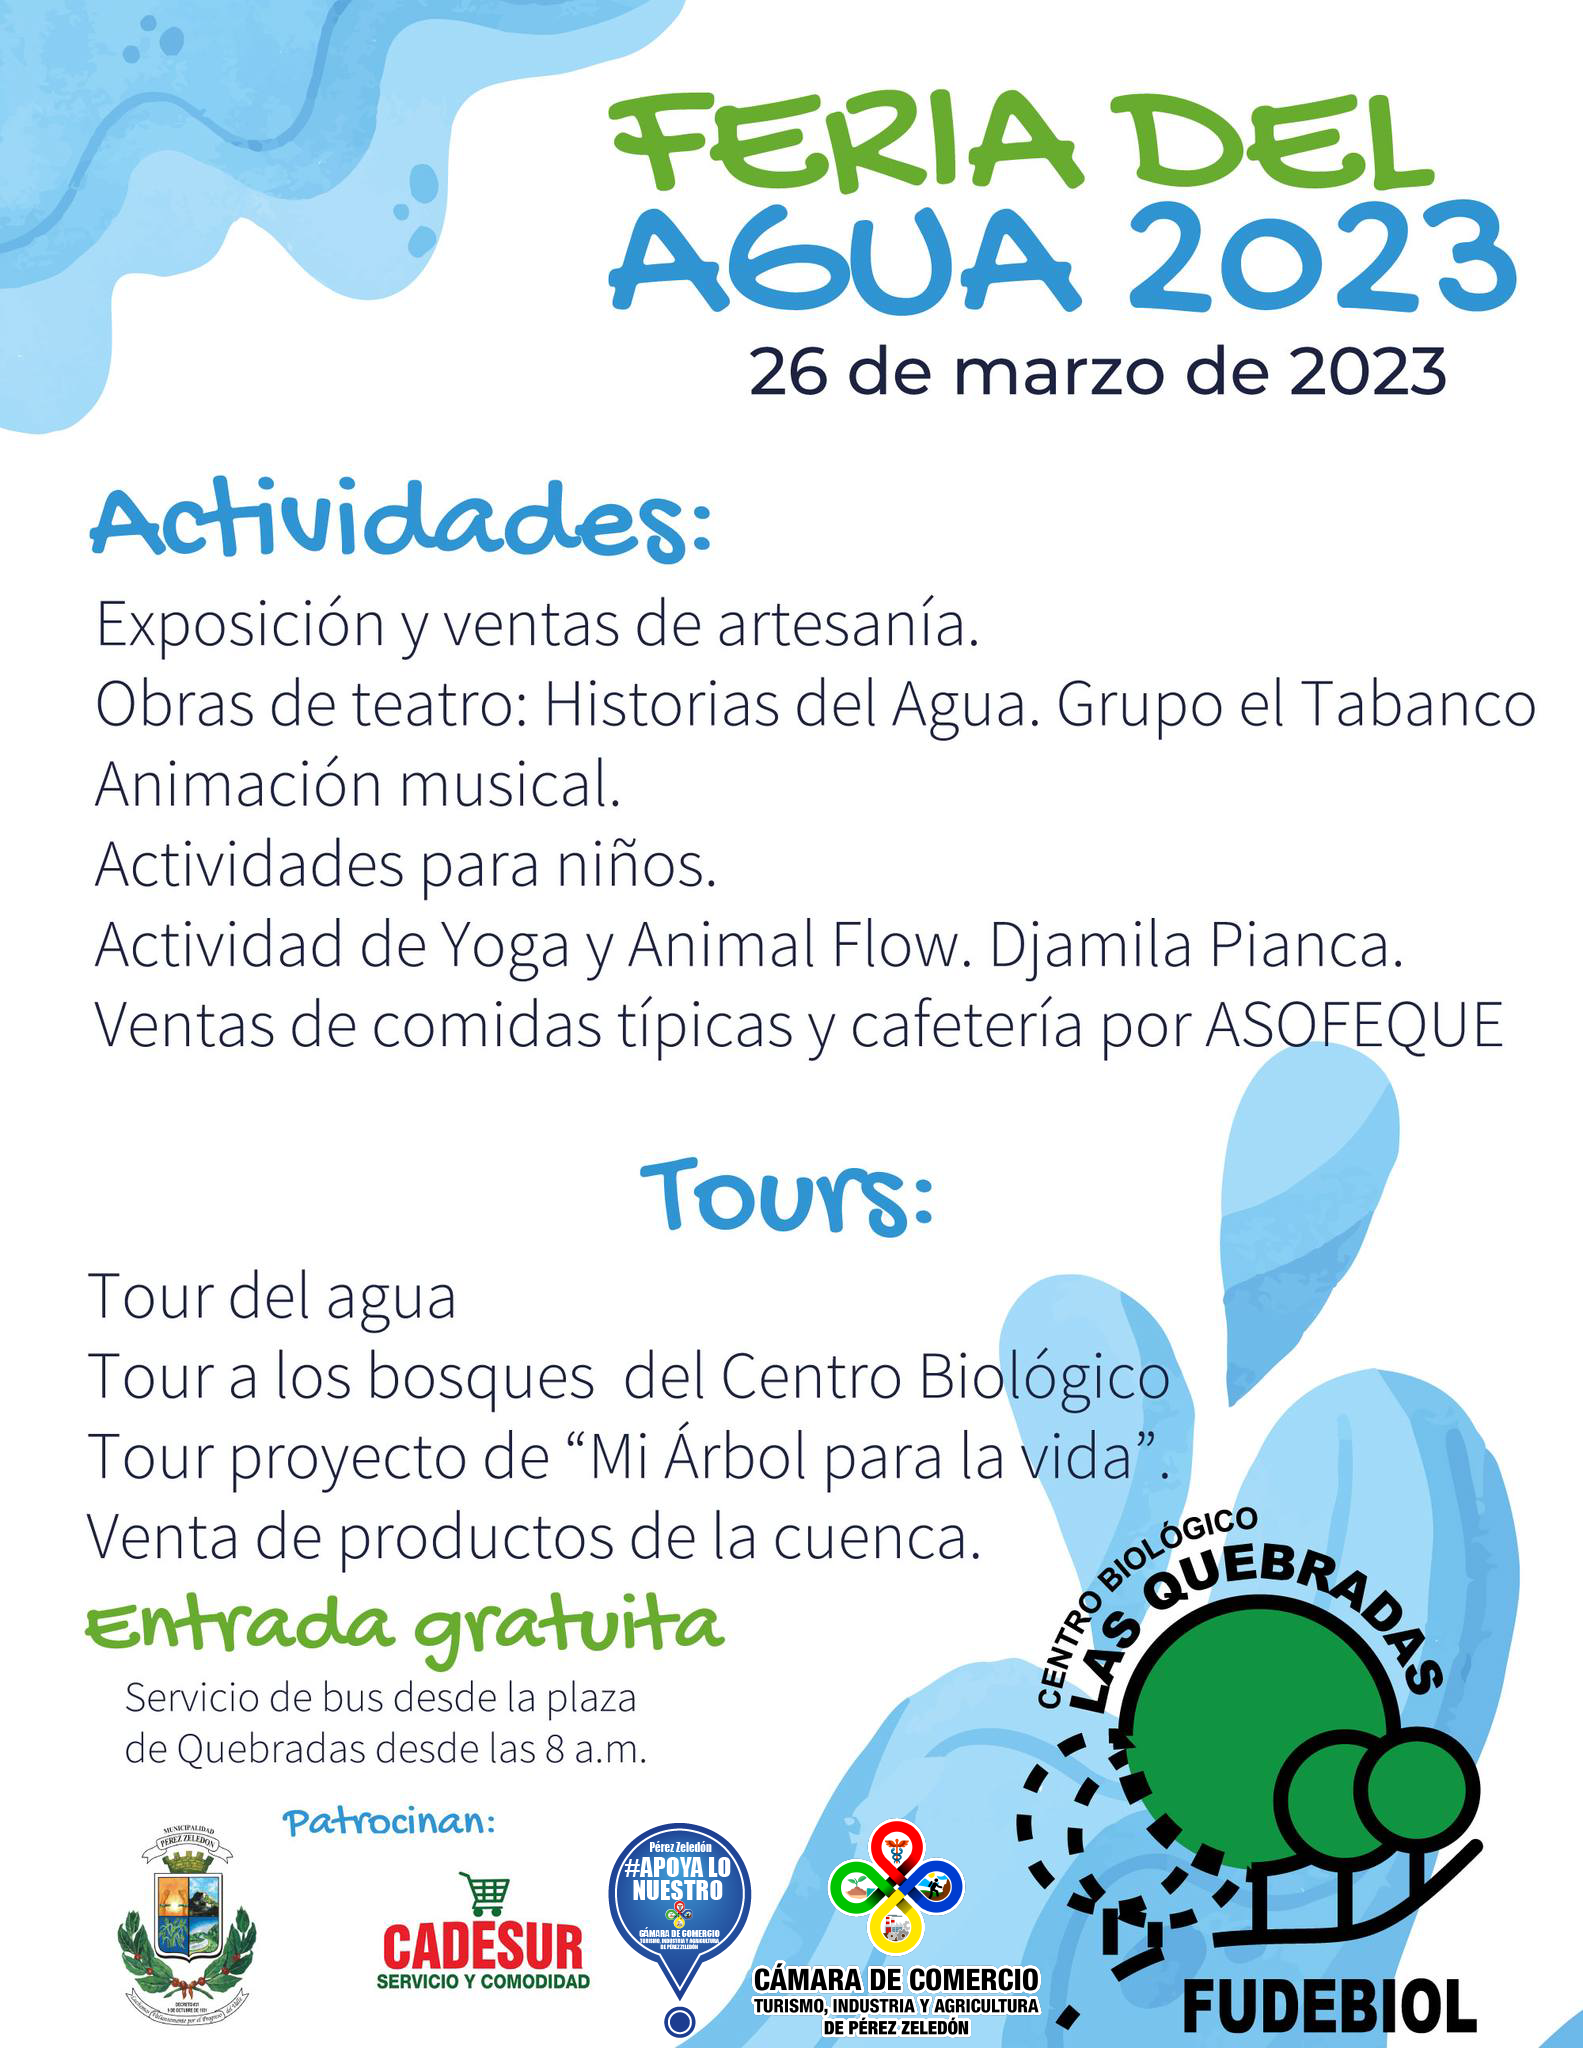 Feria del Agua 2023 FUDEBIOL